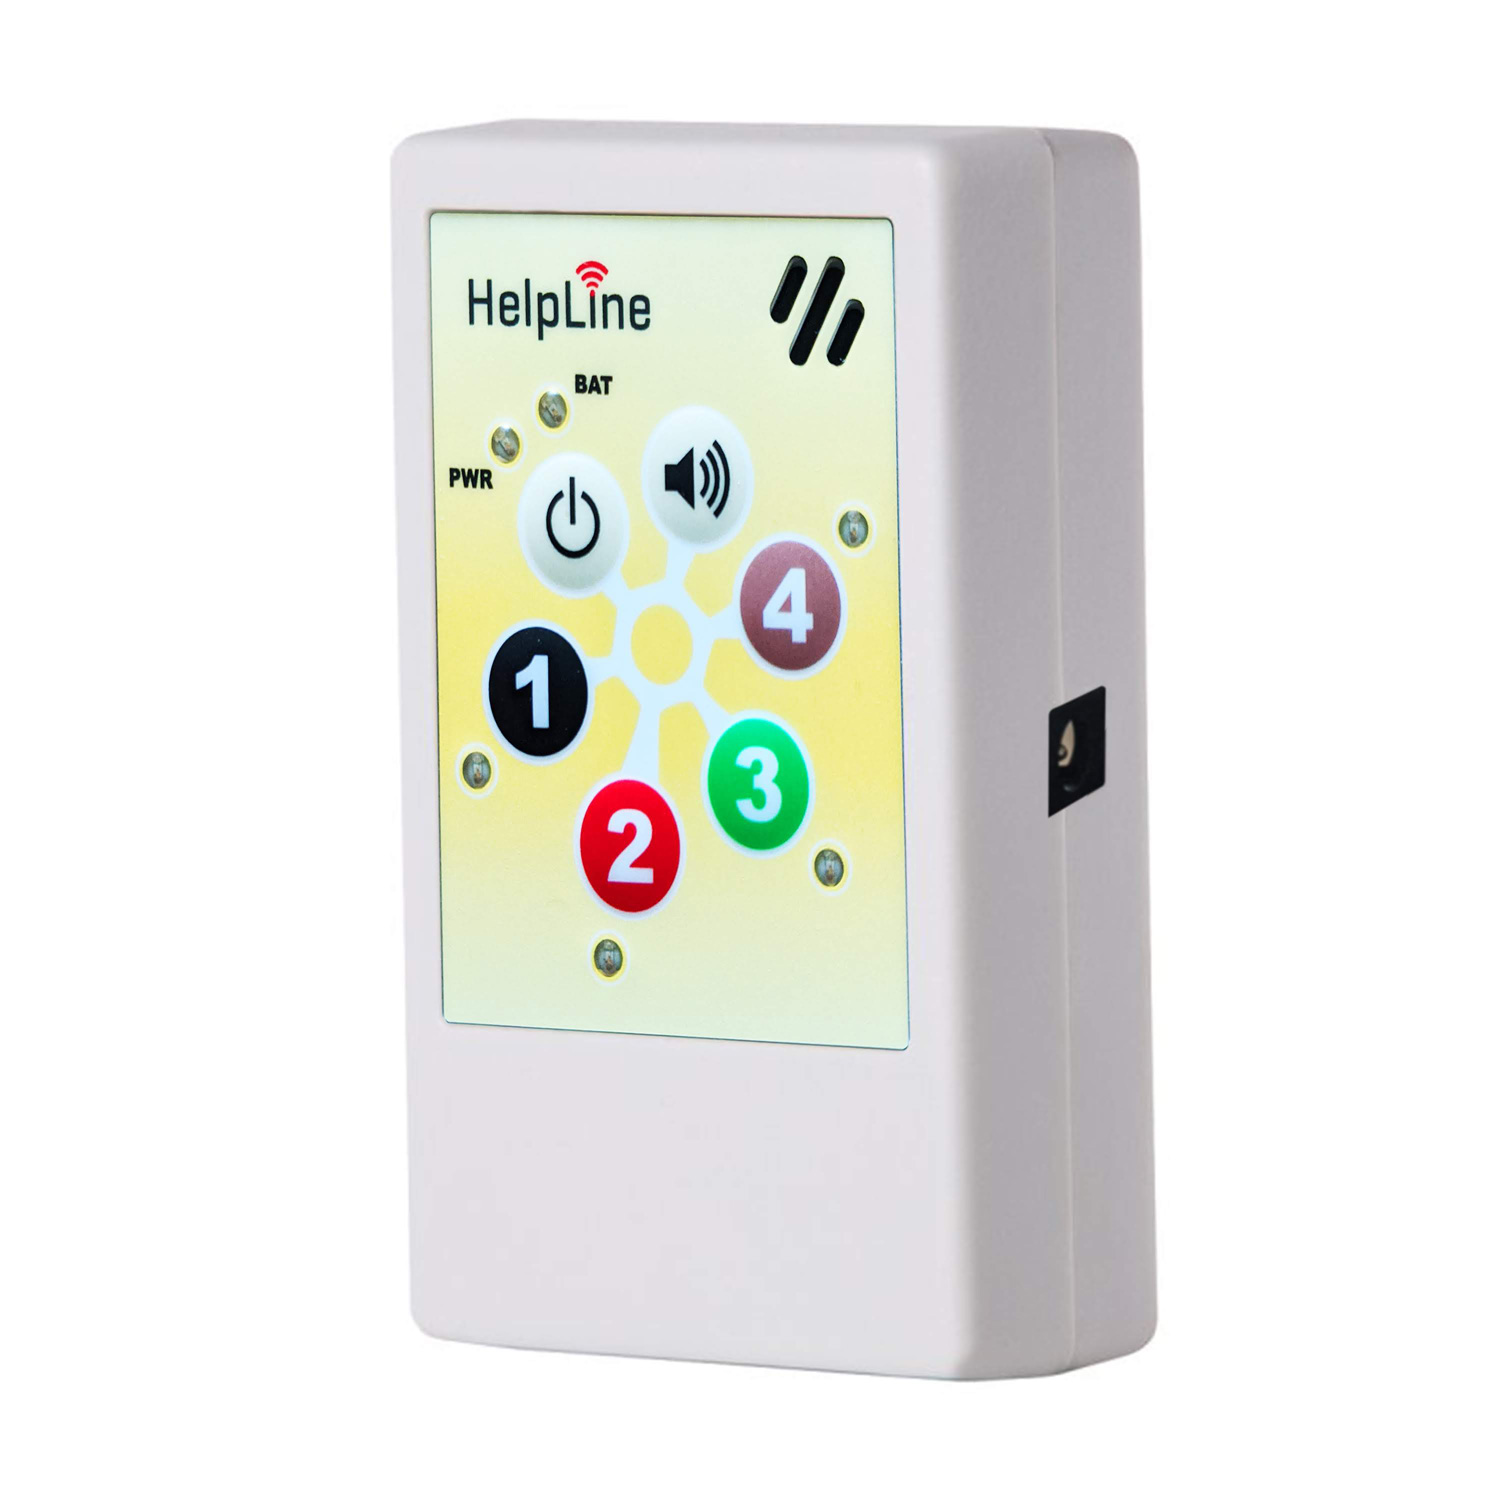 Telemat Sensormatte inklusive HelpLine 2.0 Funk-Empfänger: Funk Alarmtrittmatte für Senioren